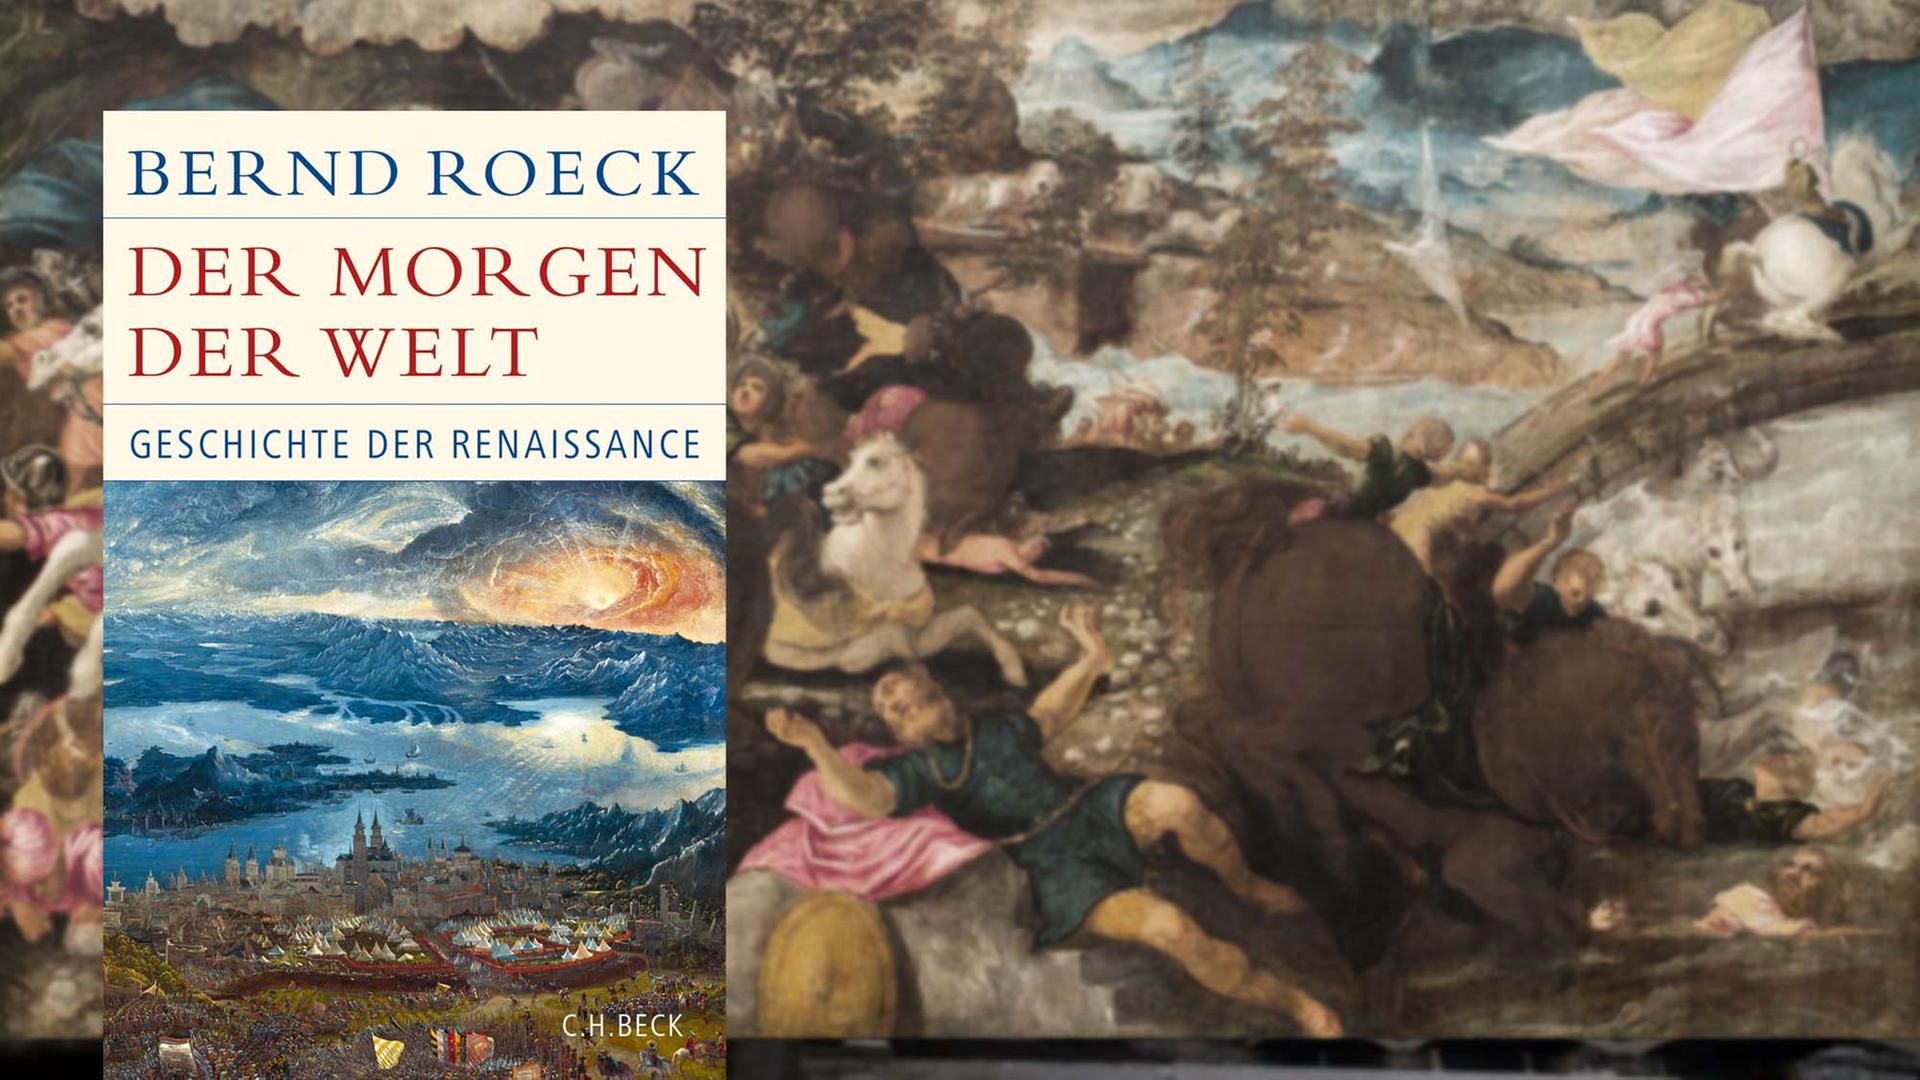 Buchcover "Der Morgen der Welt" von Bernd Roeck / im Hintergrund: Gemälde von Jacopo Tintoretto "Die Bekehrung des Saulus"